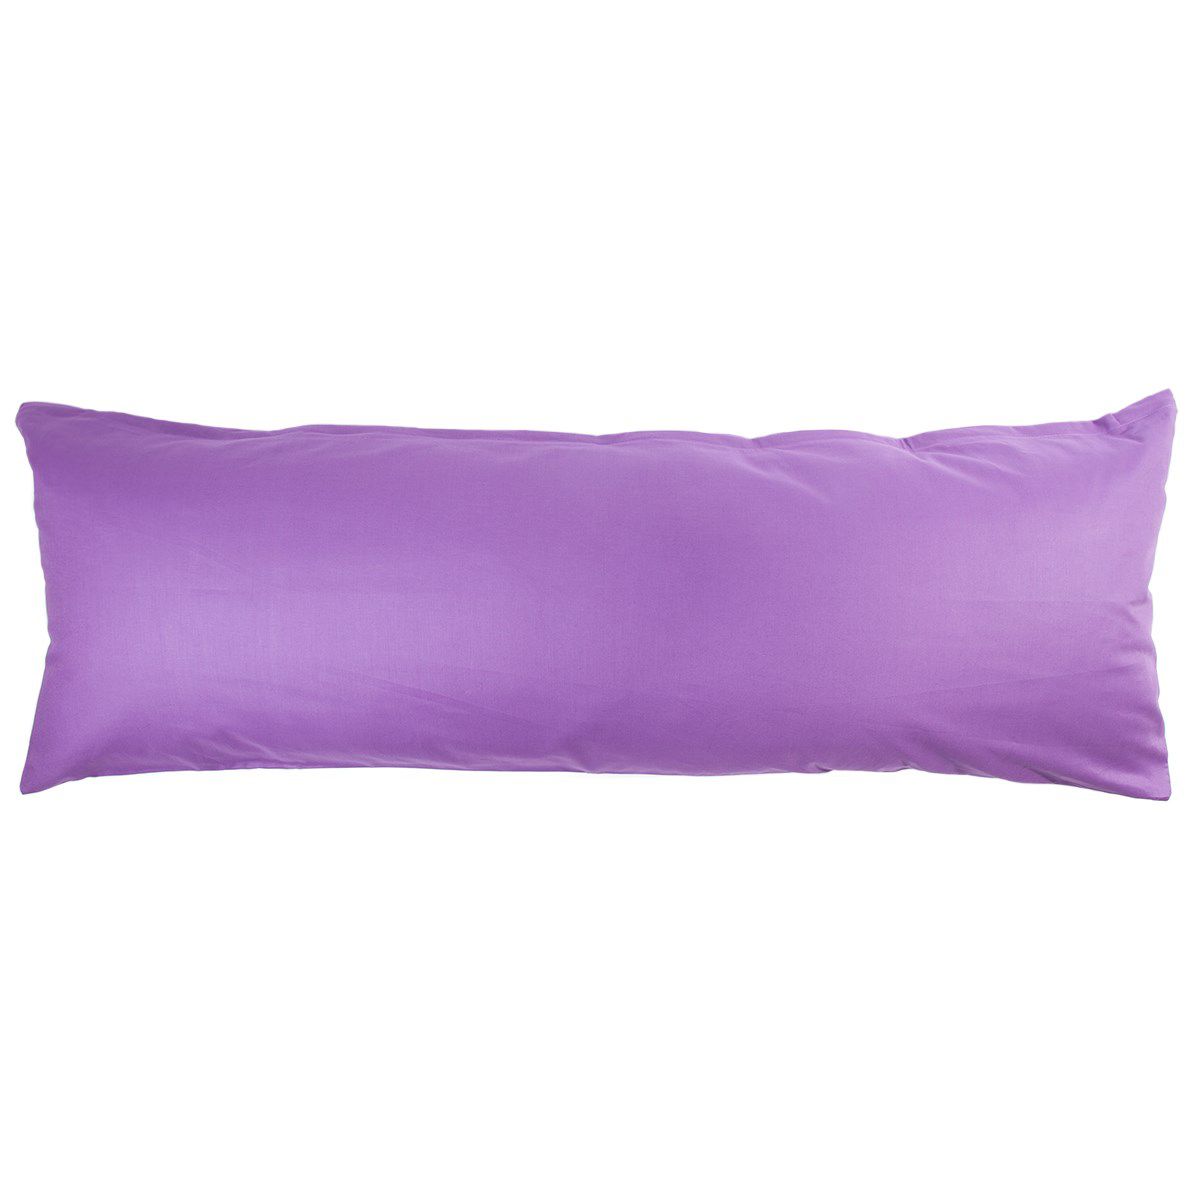 4Home povlak na Relaxační polštář Náhradní manžel tmavě fialová, 50 x 150 cm, 50 x 150 cm - 4home.cz